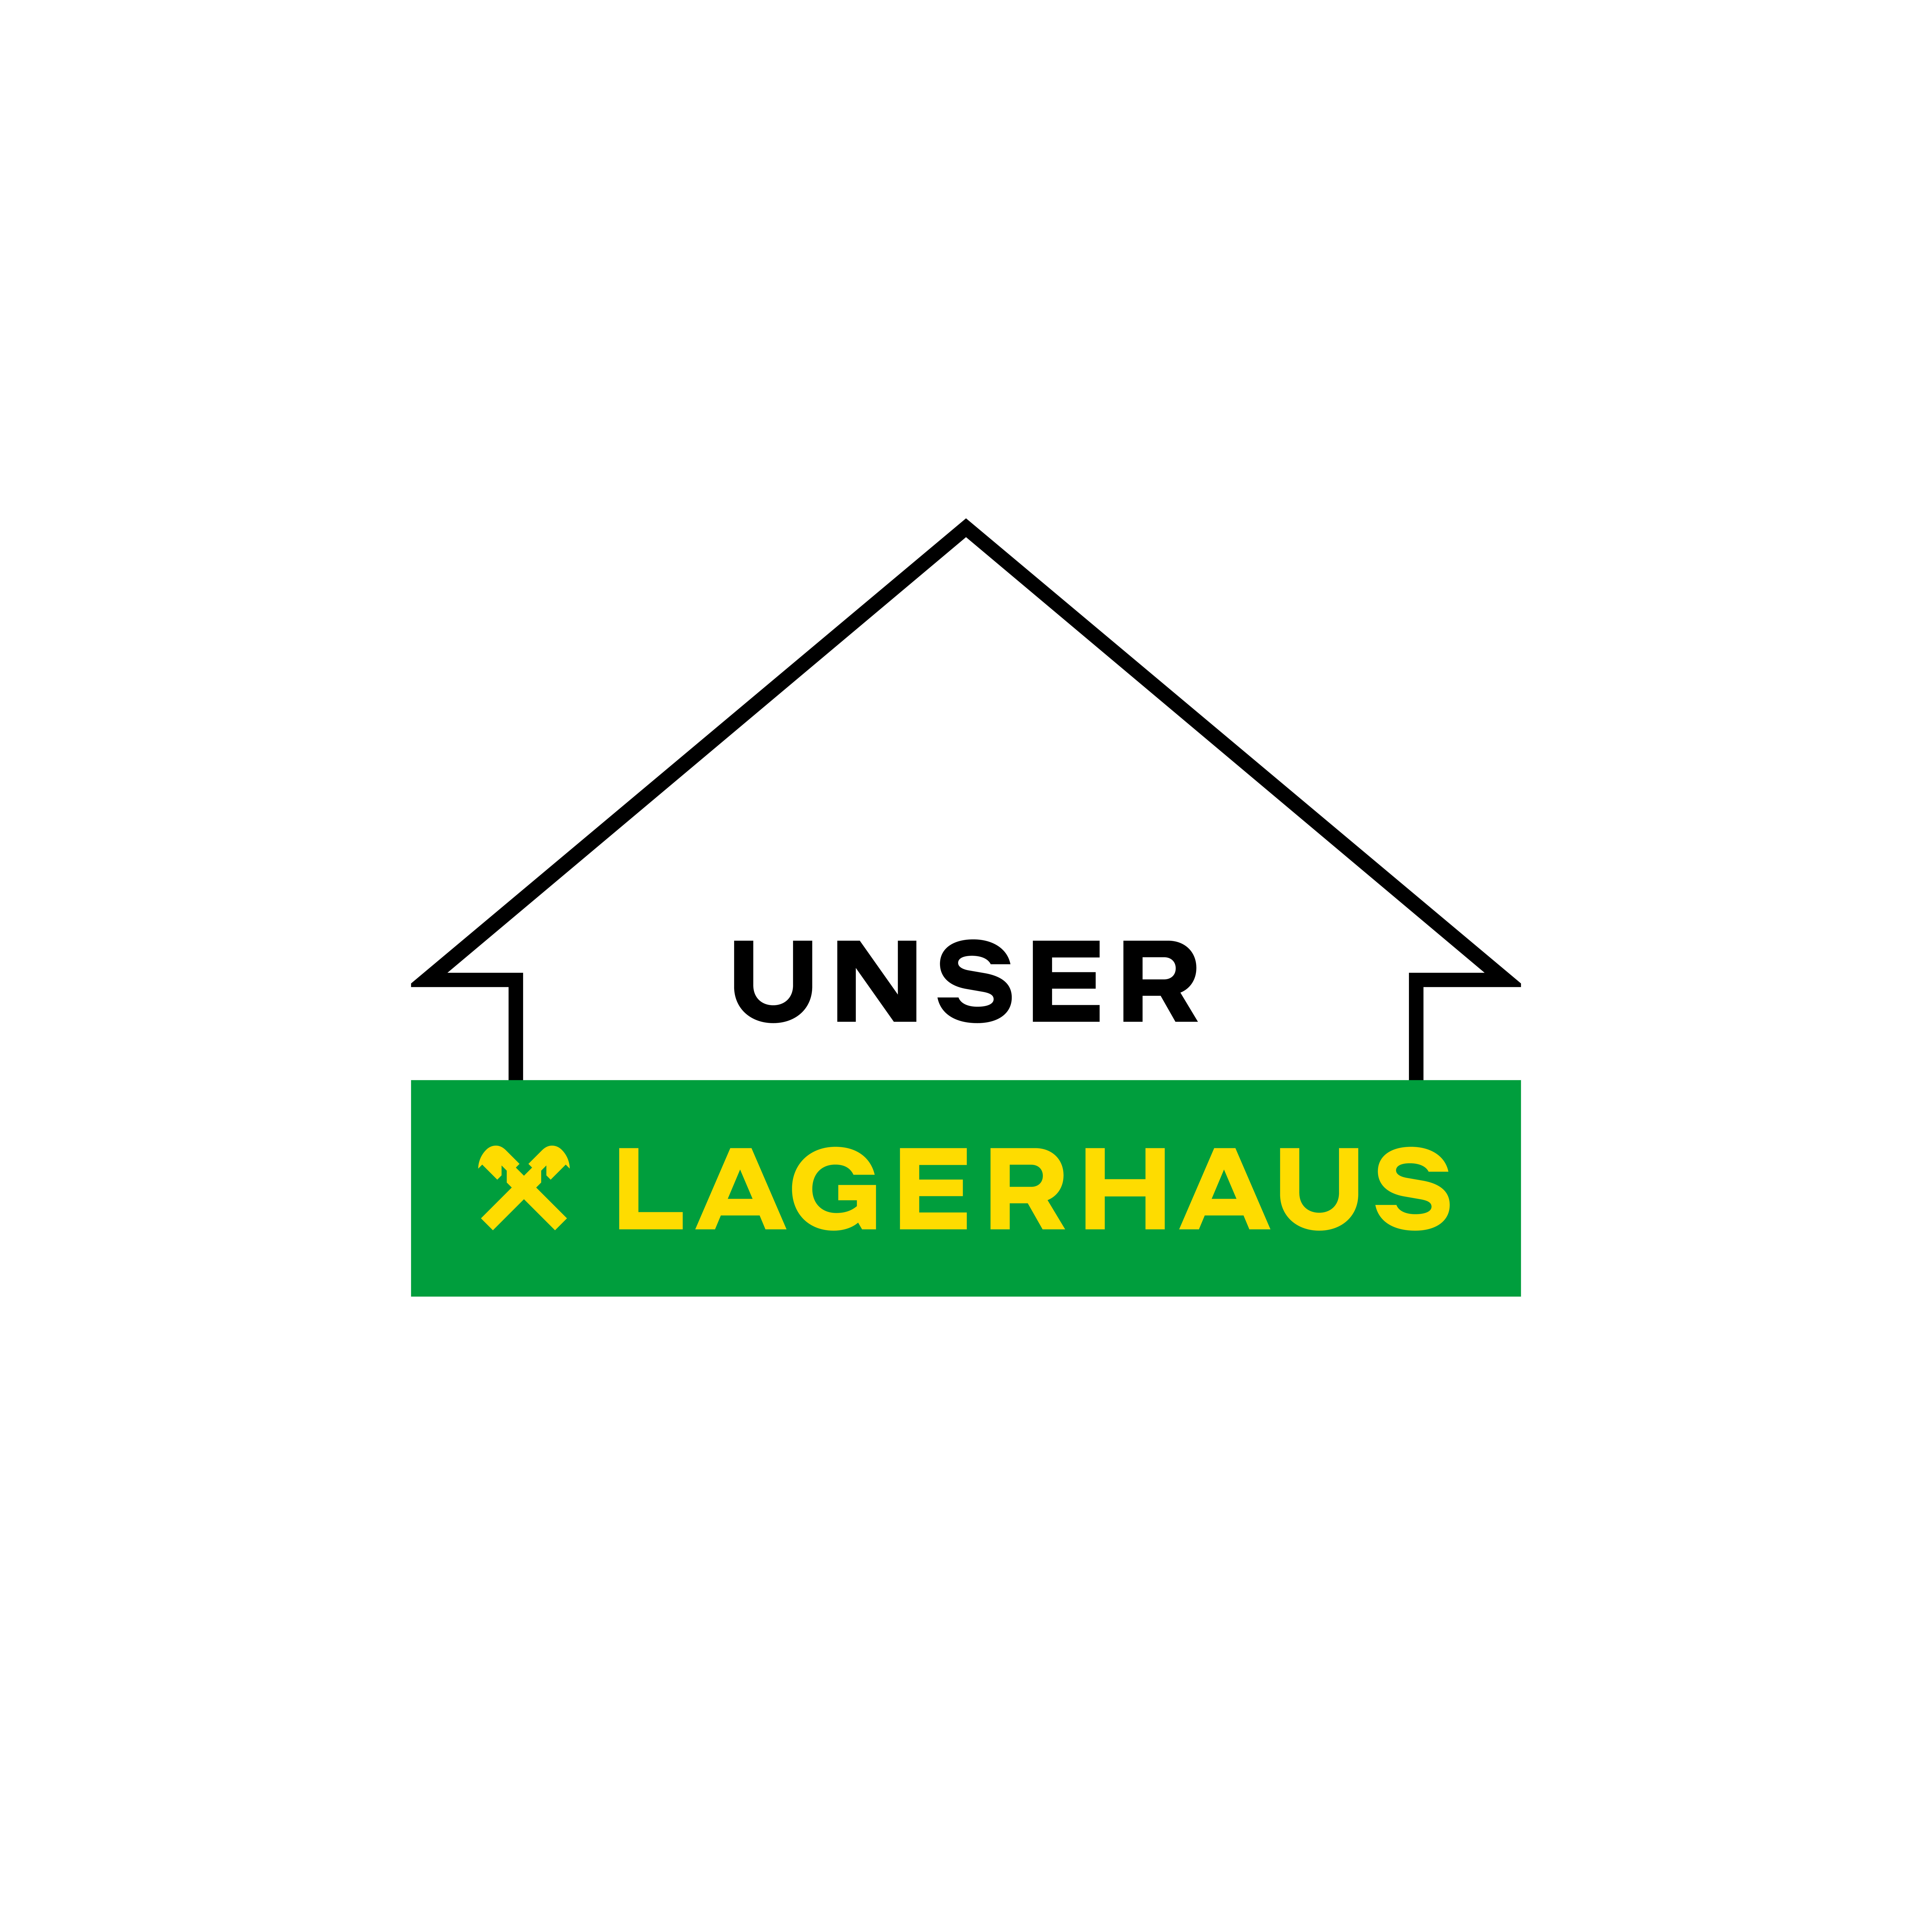 UNSER LAGERHAUS WarenhandelsgesmbH - Warehouse - Villach - 04242 44204 Austria | ShowMeLocal.com